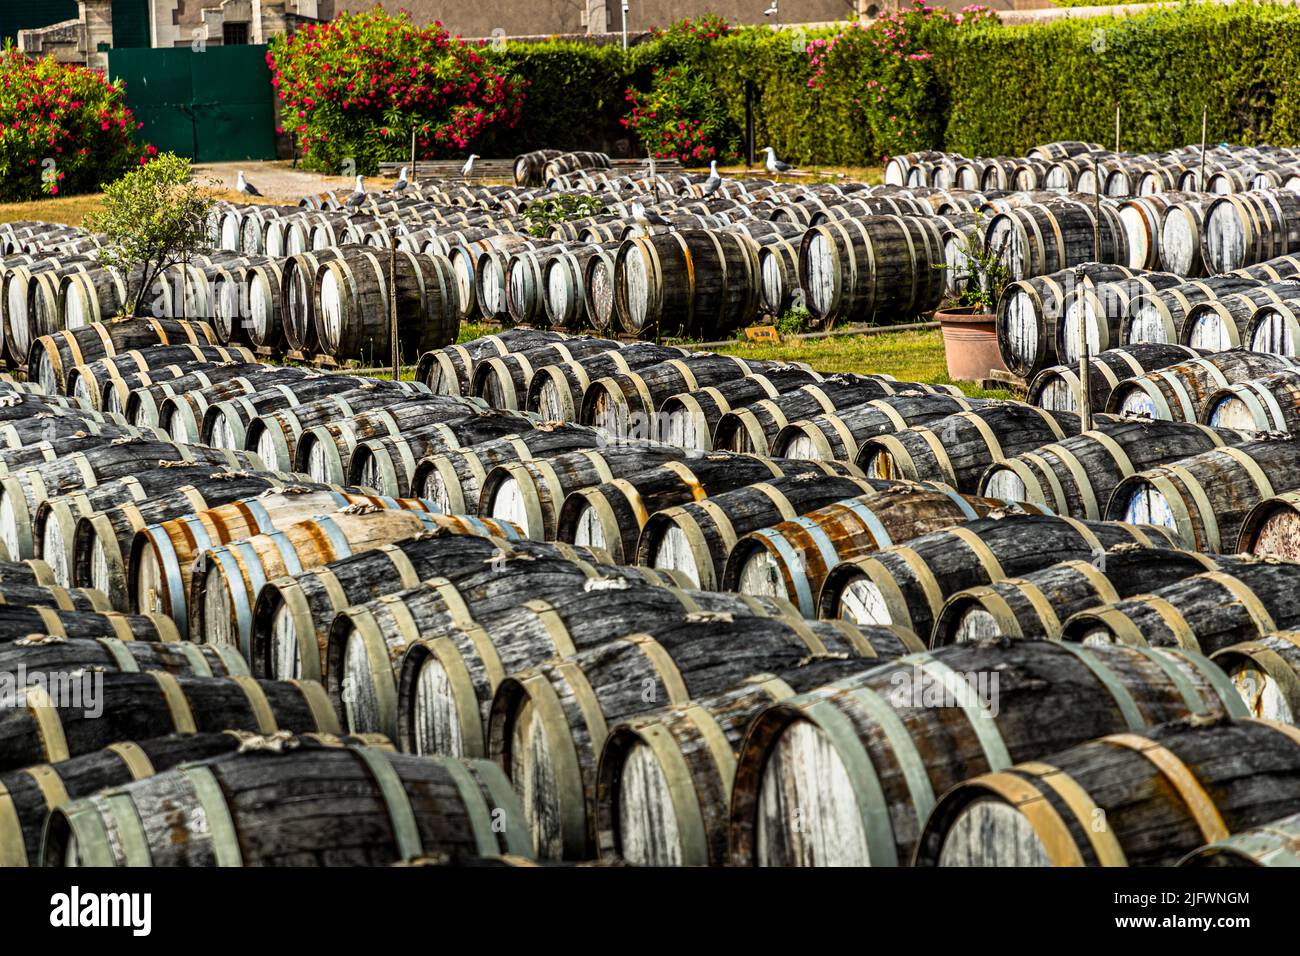 Im Hof der Produktionsstätte Noilly Prat in Marseille (Frankreich) werden alte Eichenfässer für ein ganzes Jahr gelagert. Der Weißwein, bis zu 75 Prozent aus dem regional angebauten picpoul, ist Wind und Sonne ausgesetzt. Die Nähe zum Meer beeinflusst auch den Geschmack des Weines Stockfoto